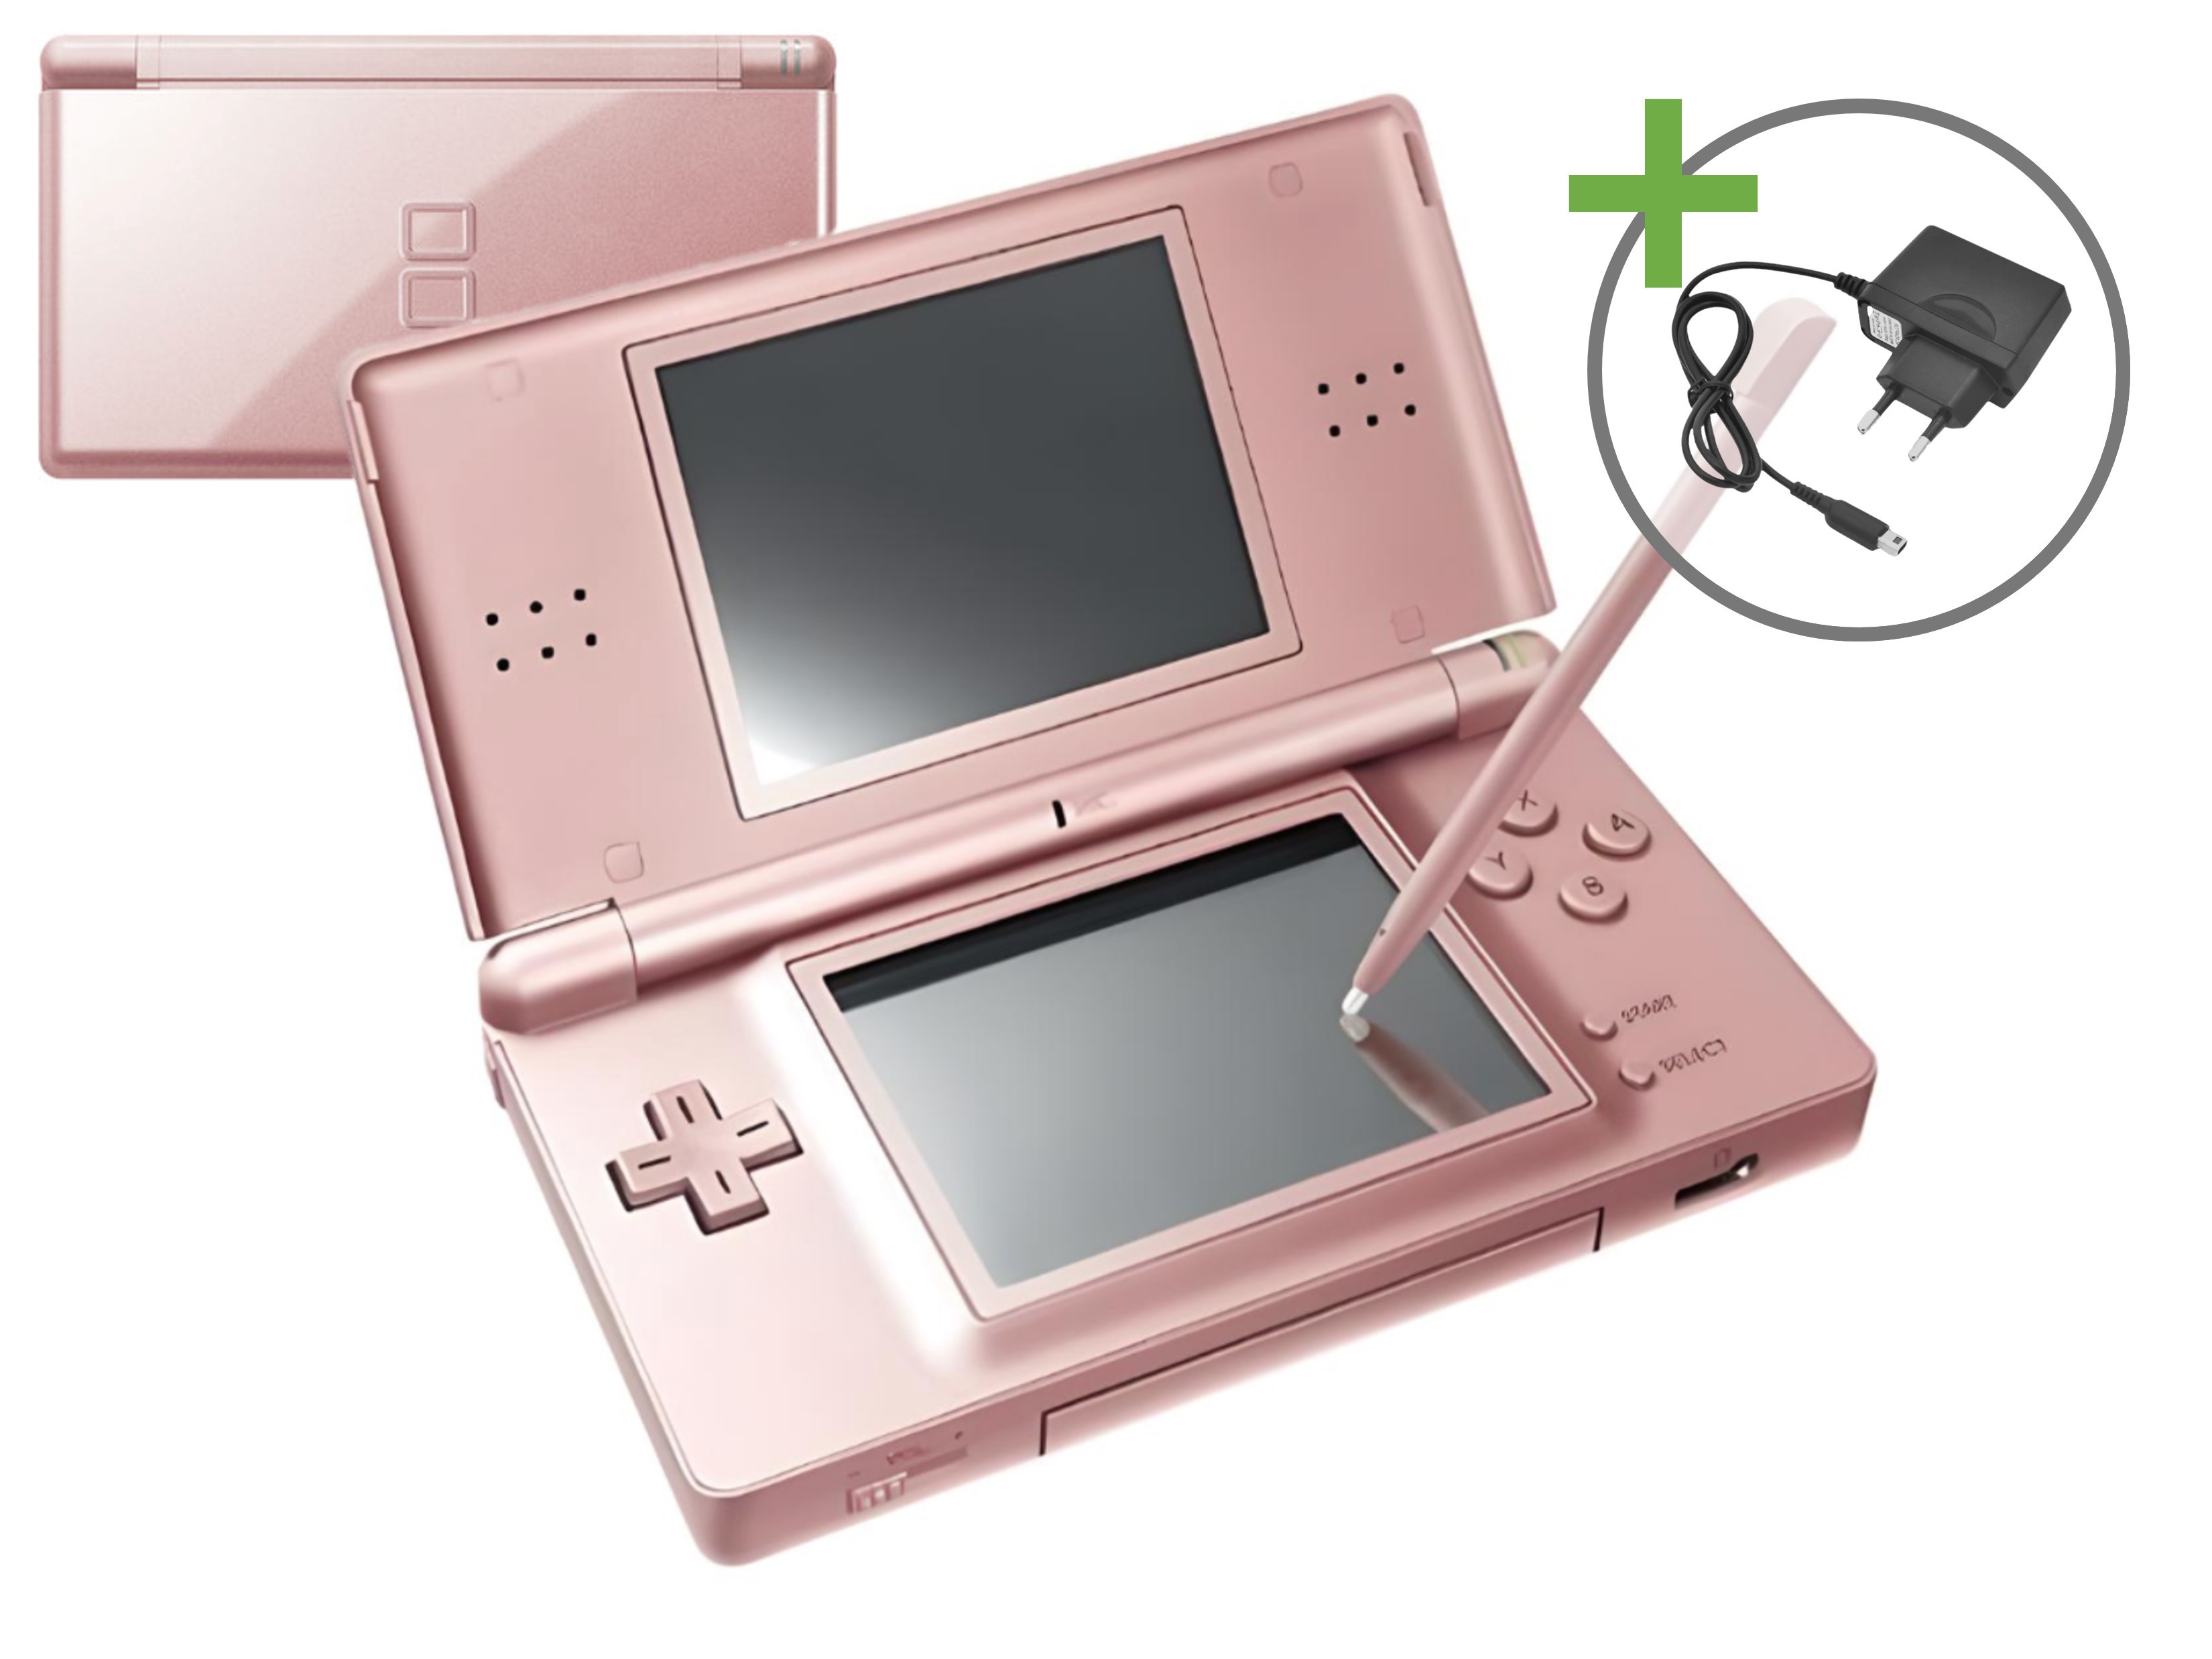 Nintendo DS Lite - Metallic Pink - Nintendo DS Hardware